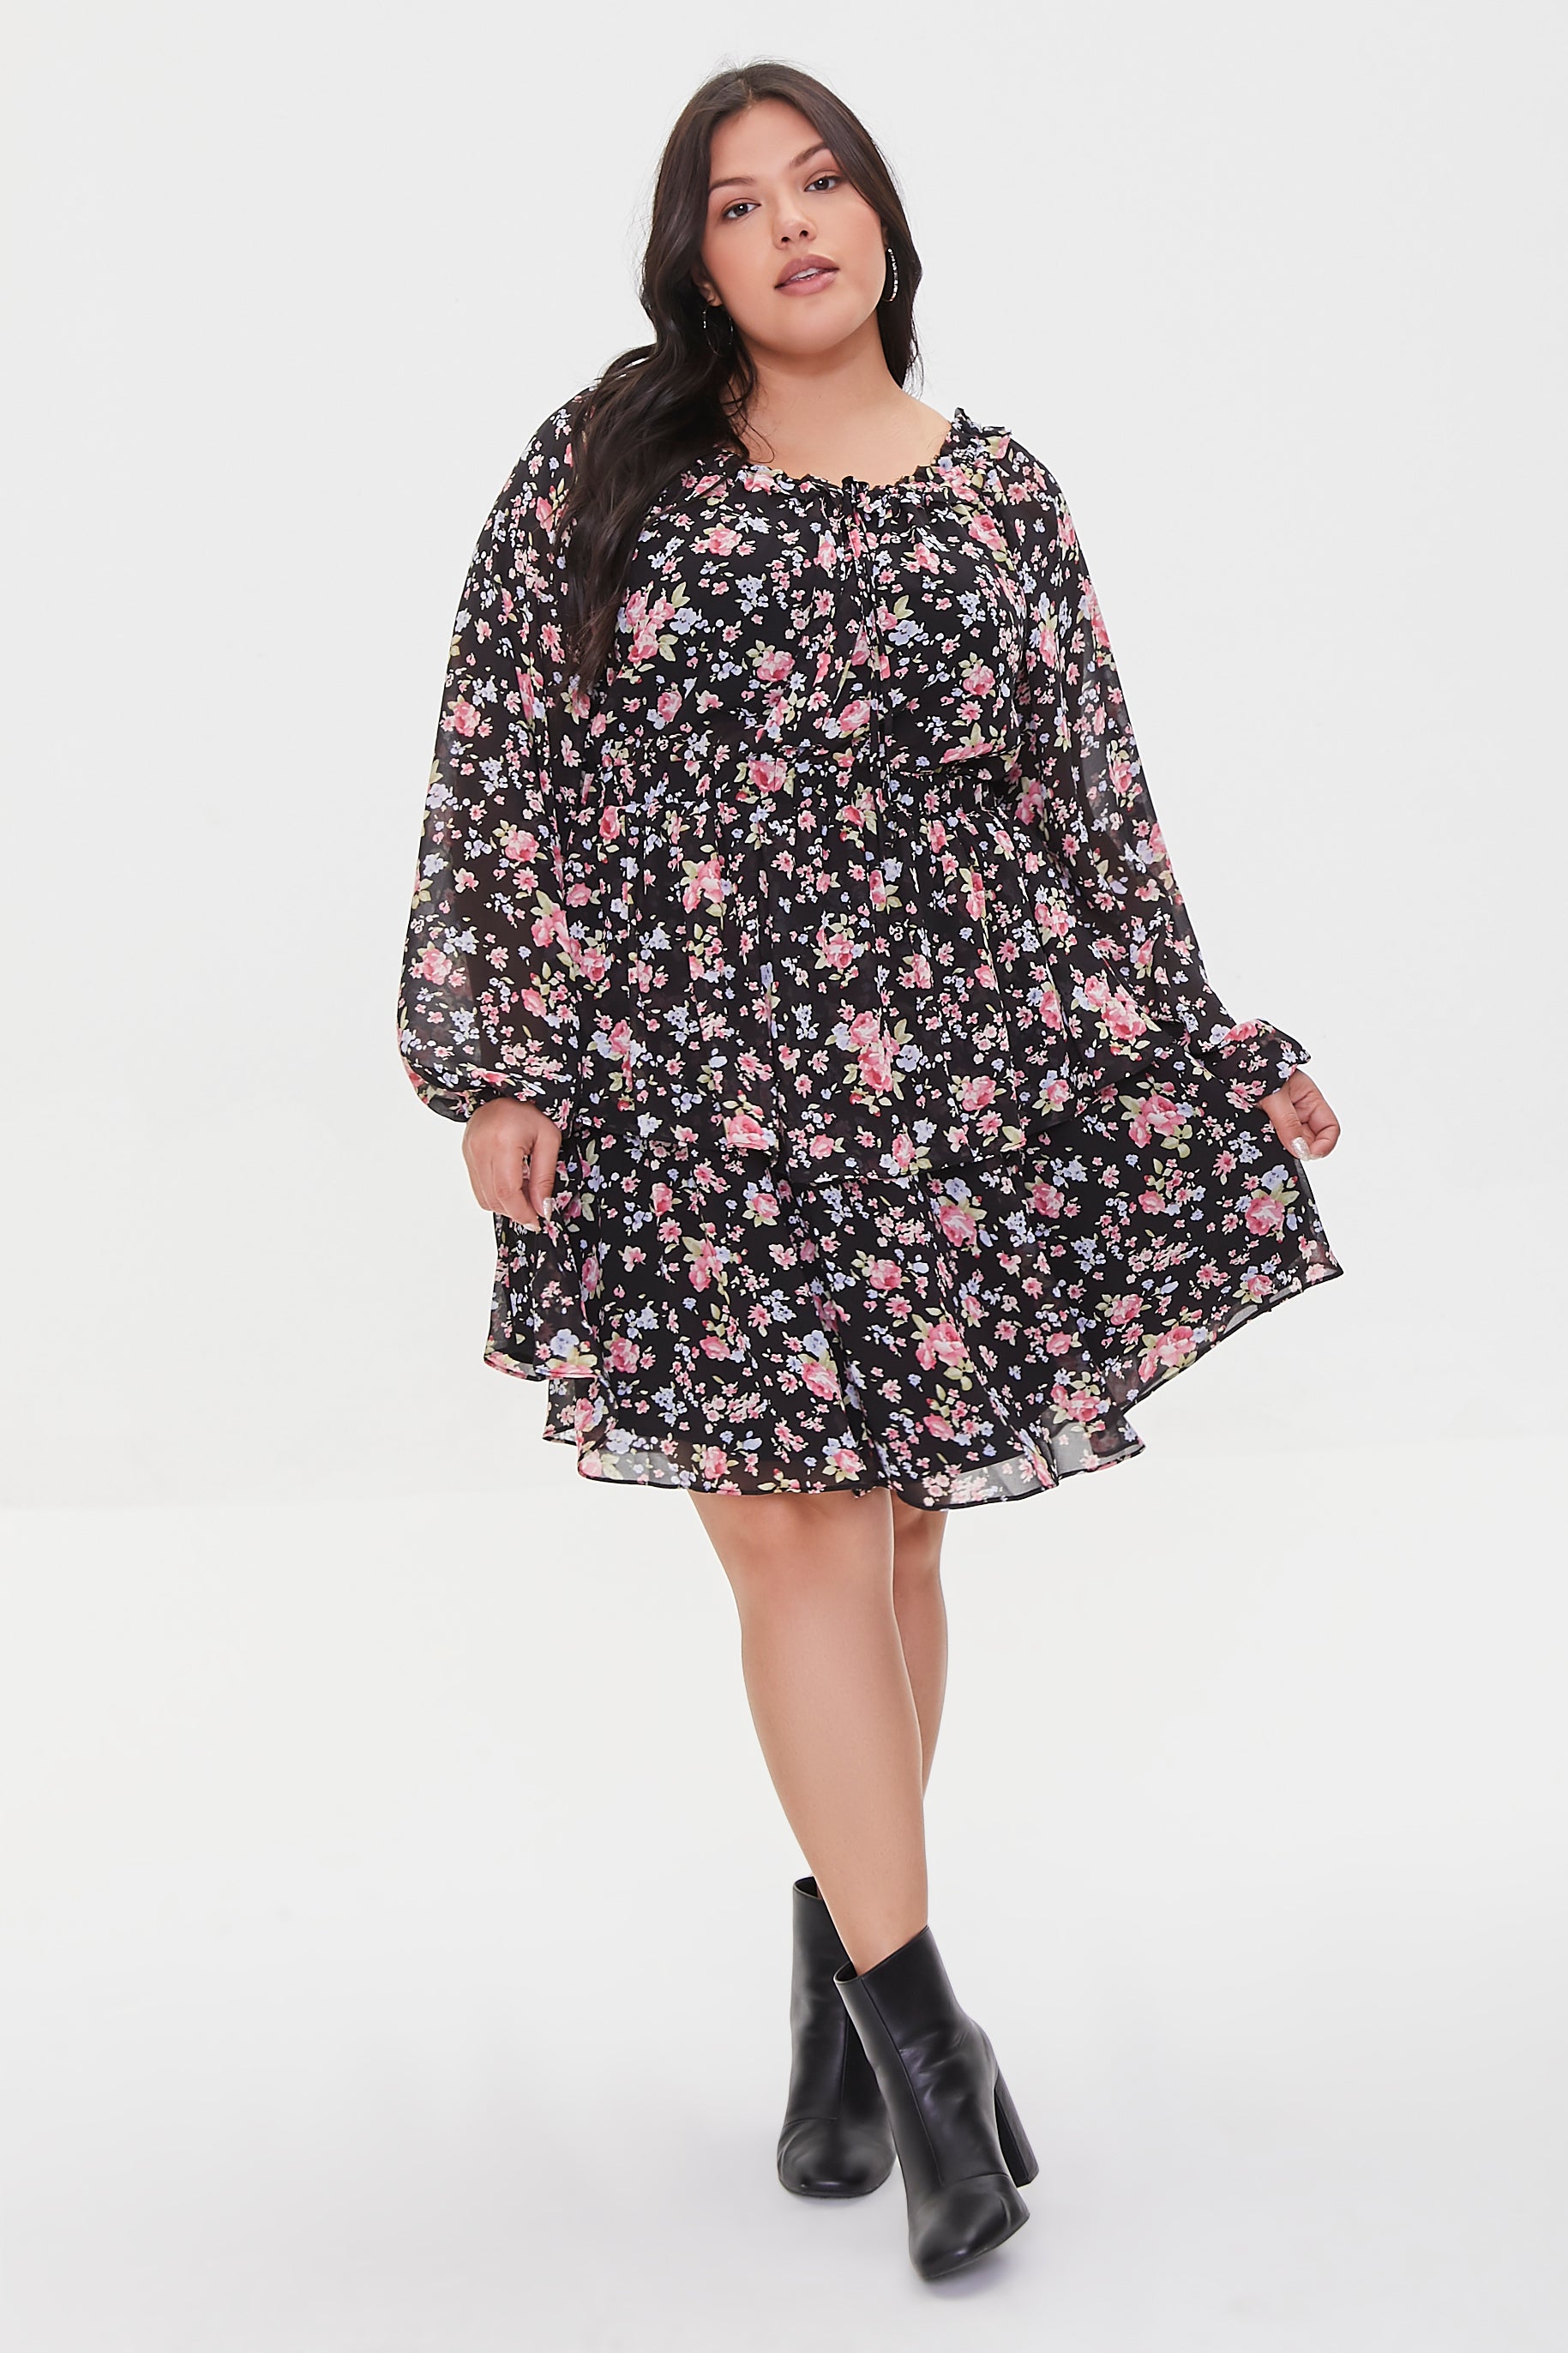 Black/multi Plus Size Floral Mini Dress